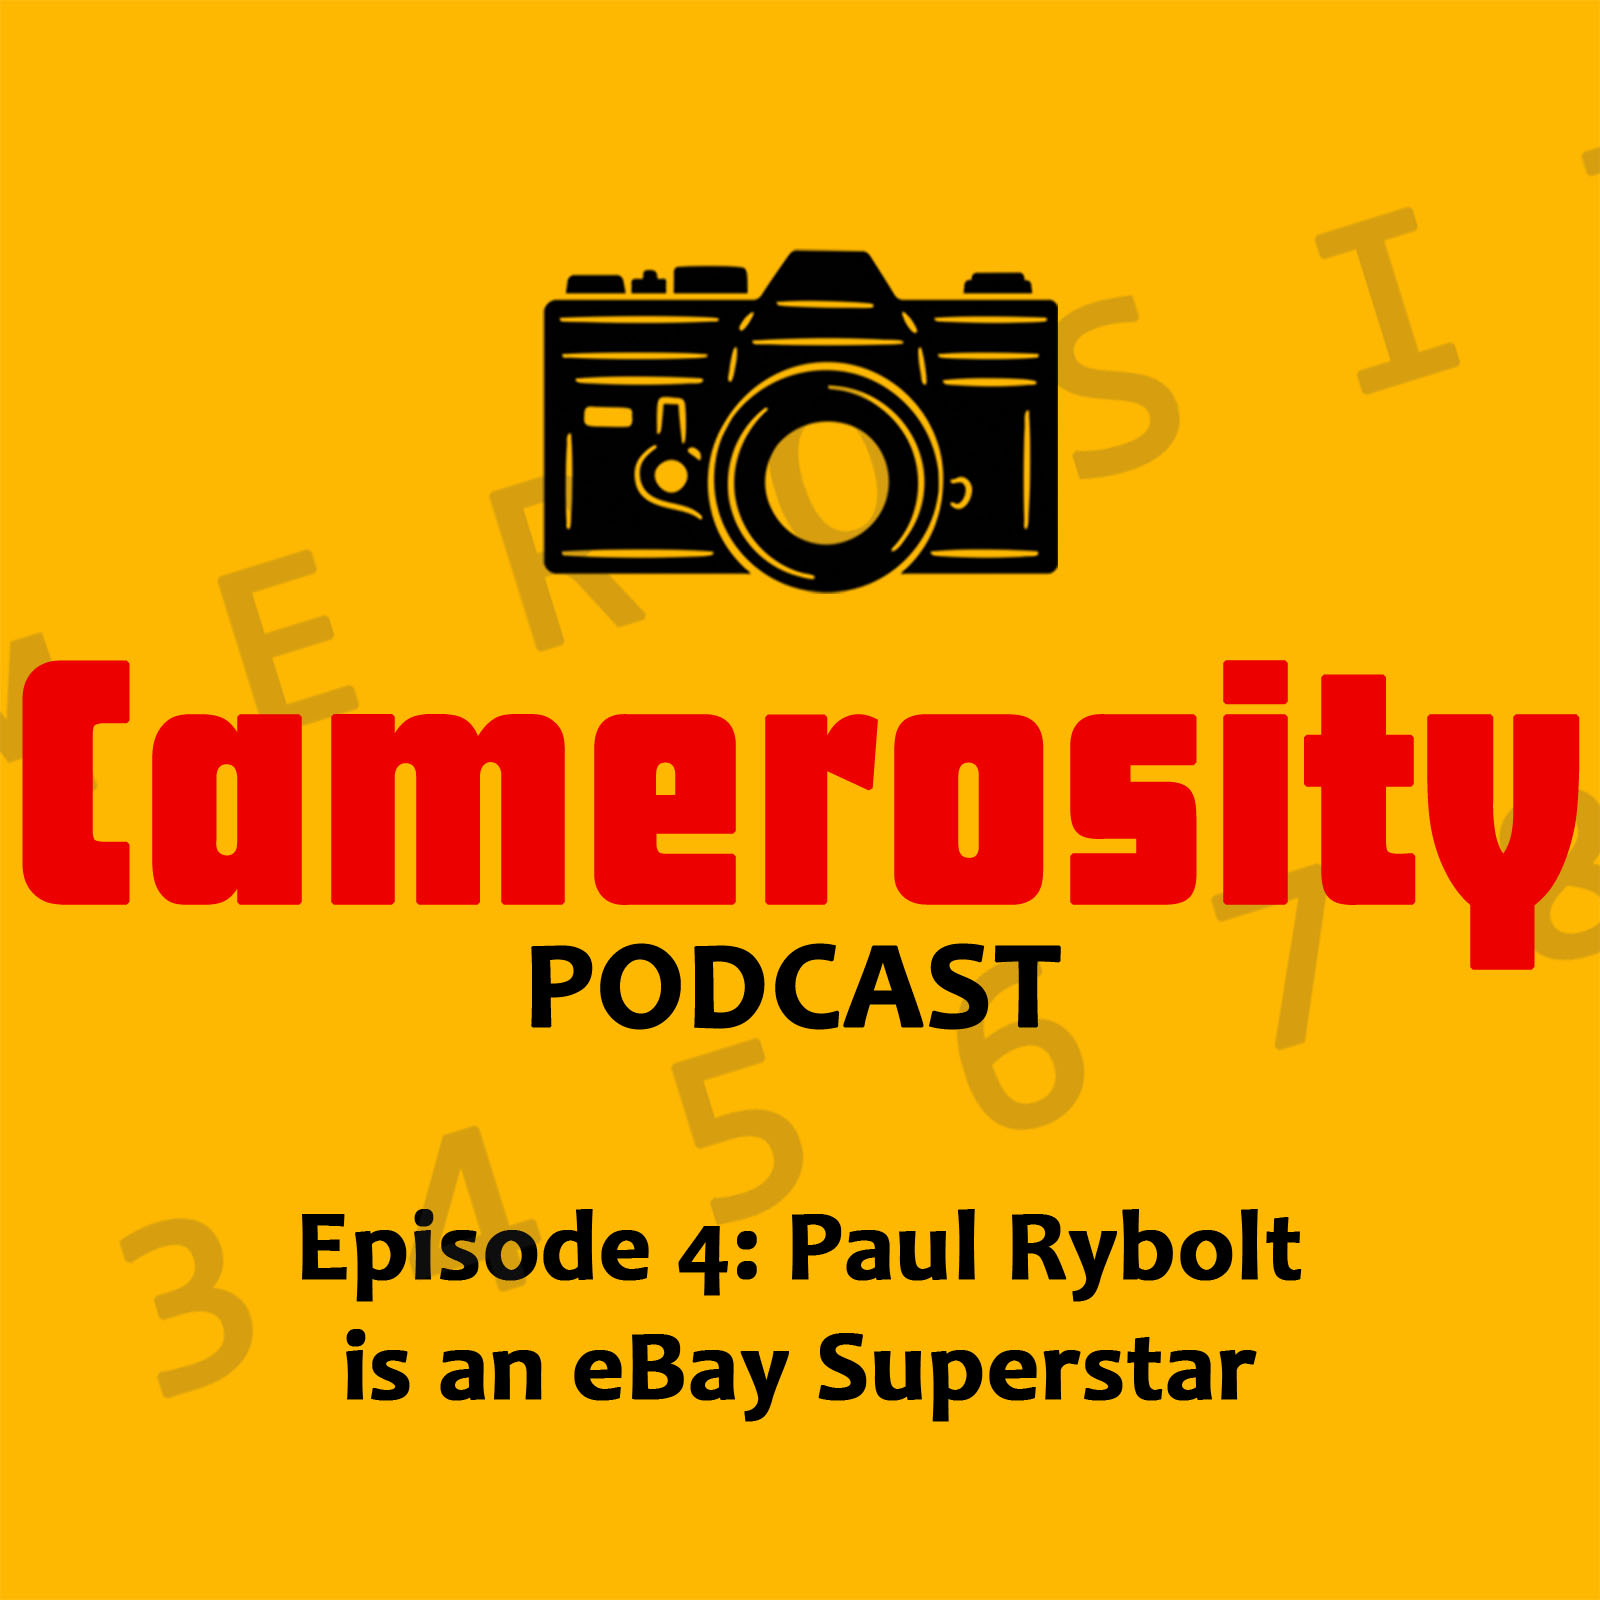 Episode 4: Paul Rybolt is an eBay Superstar